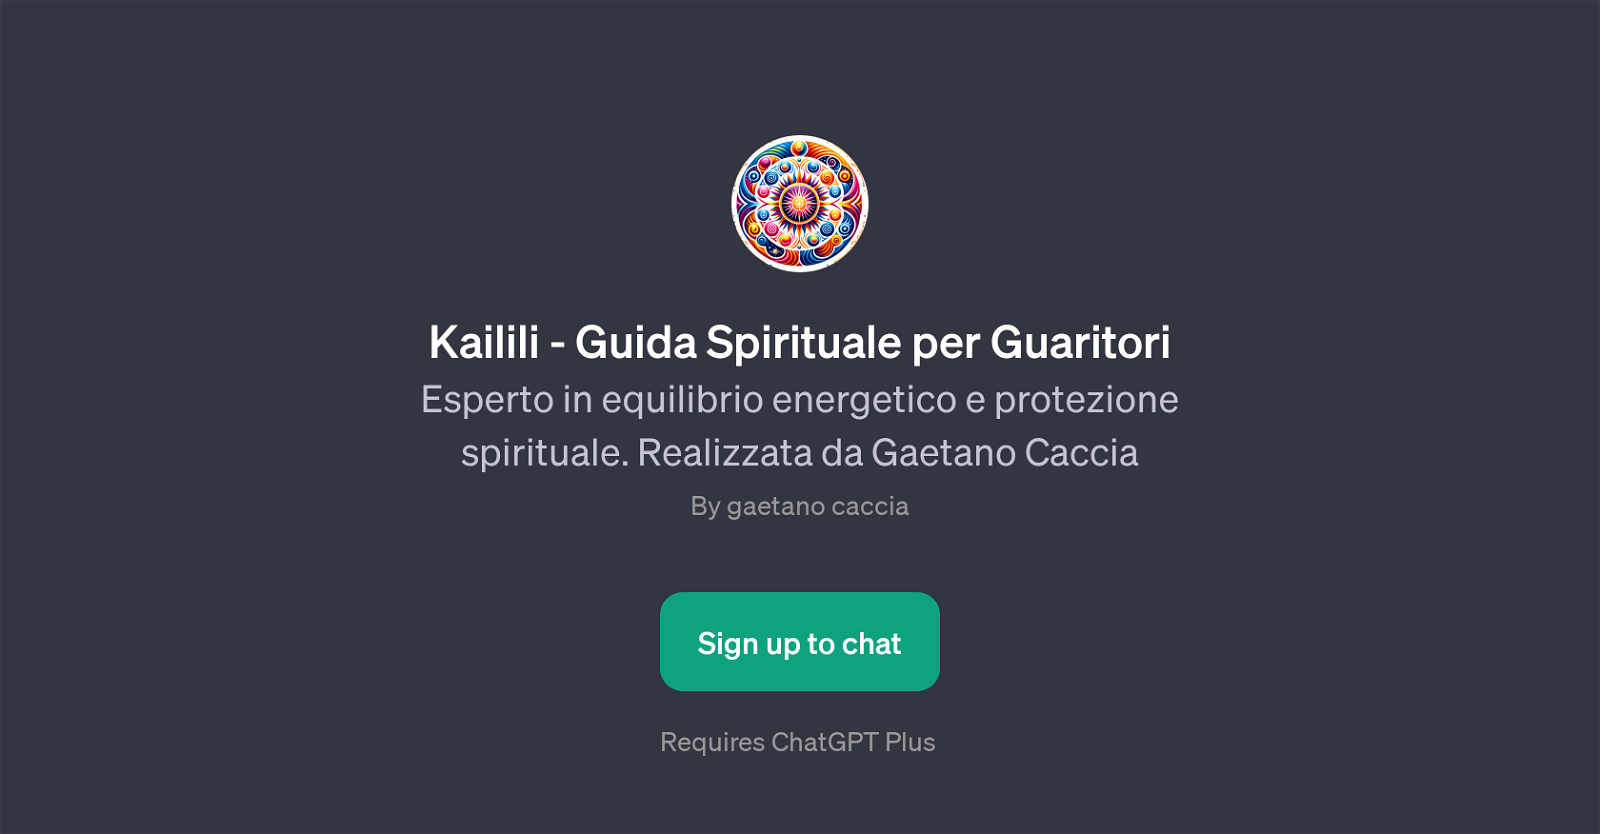 Kailili - Guida Spirituale per Guaritori website